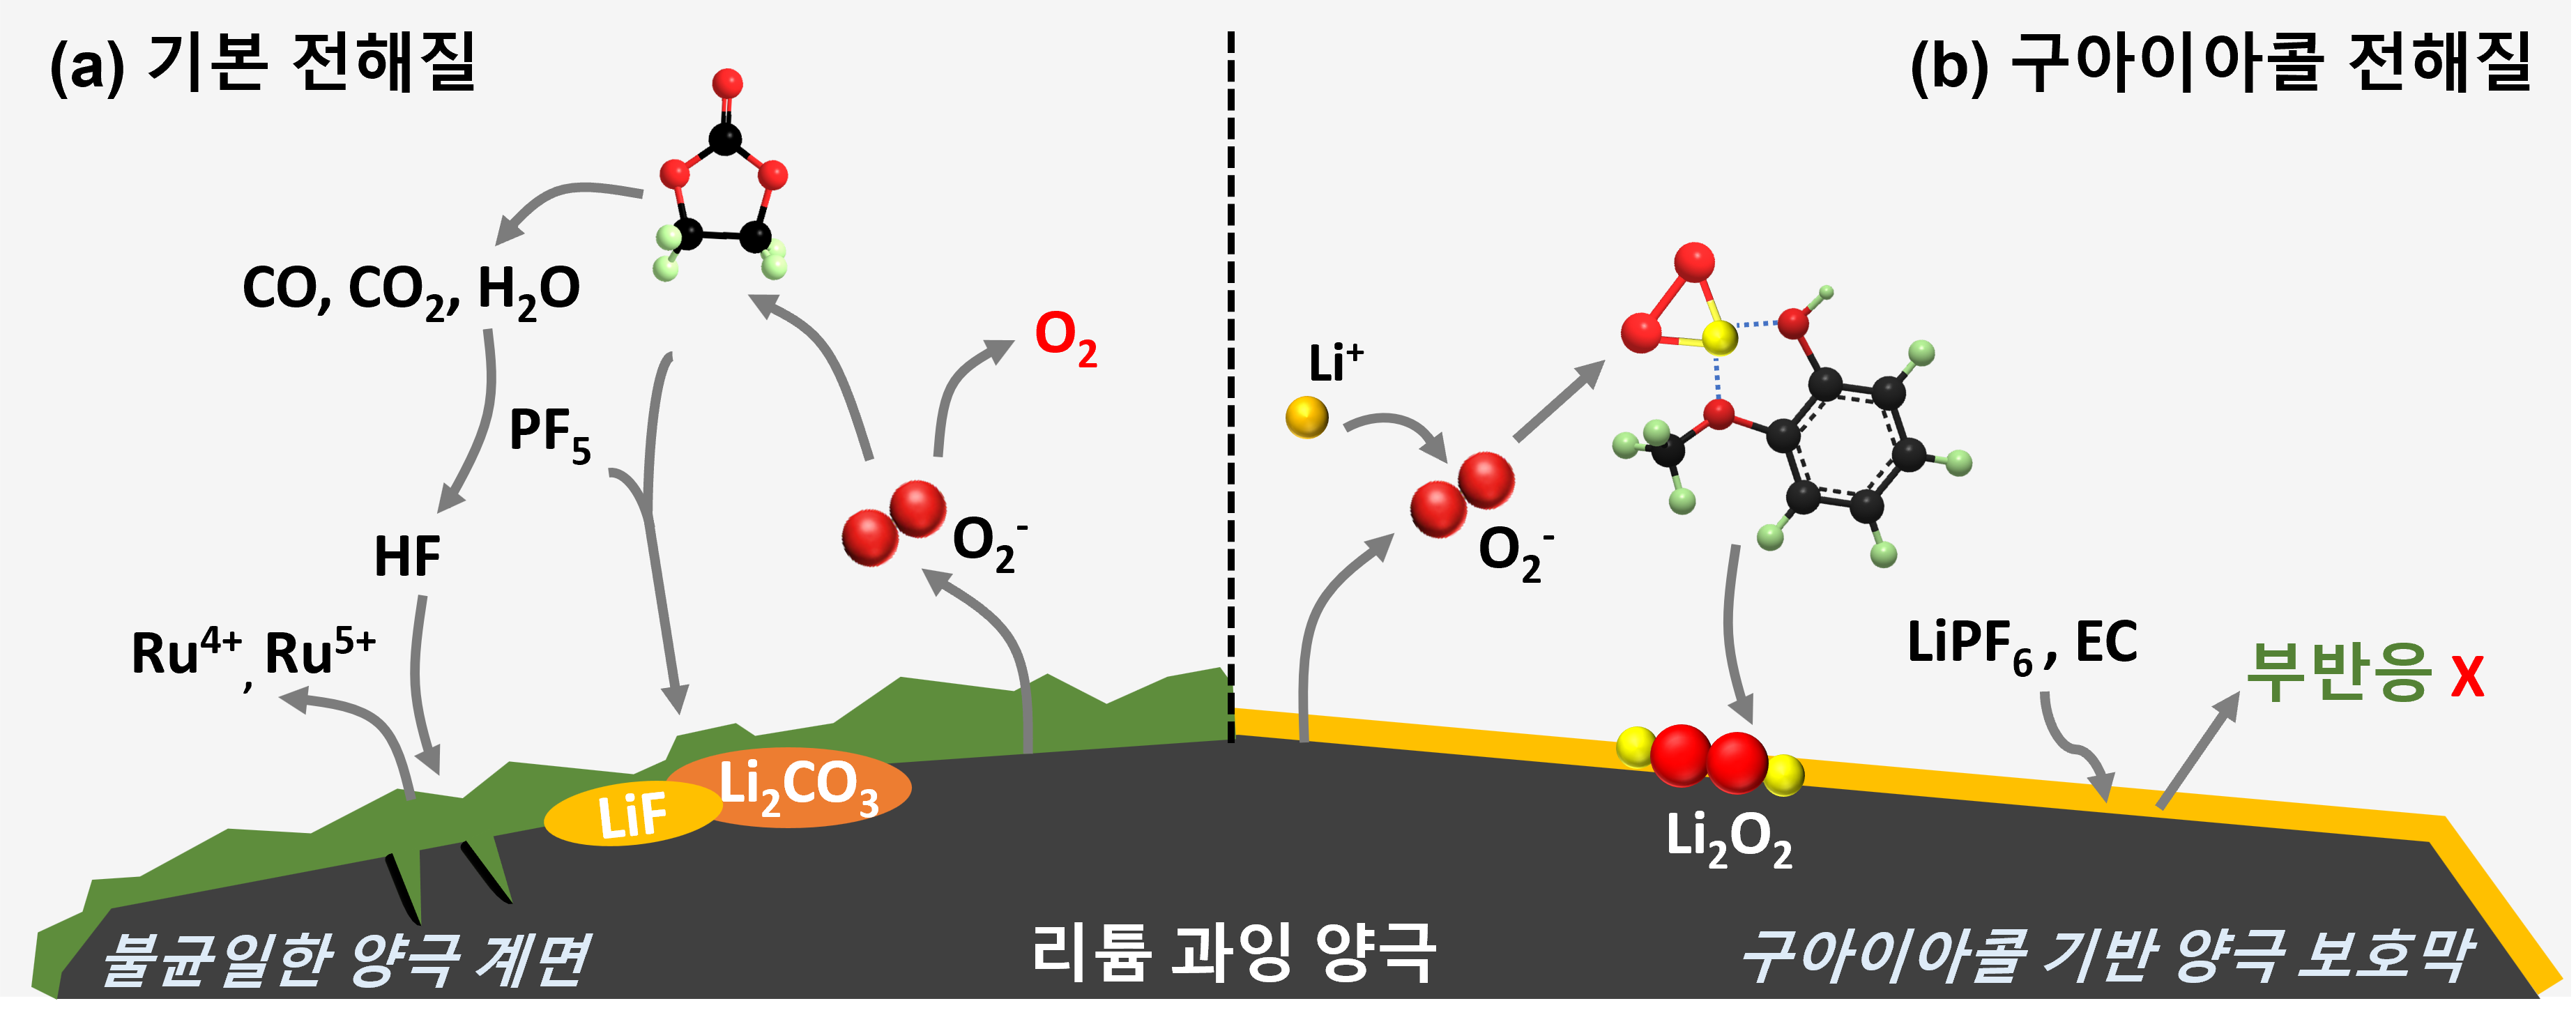 그림1. 루테늄 기반 리튬 과잉 산화물에서 구아이아콜의 작동 원리